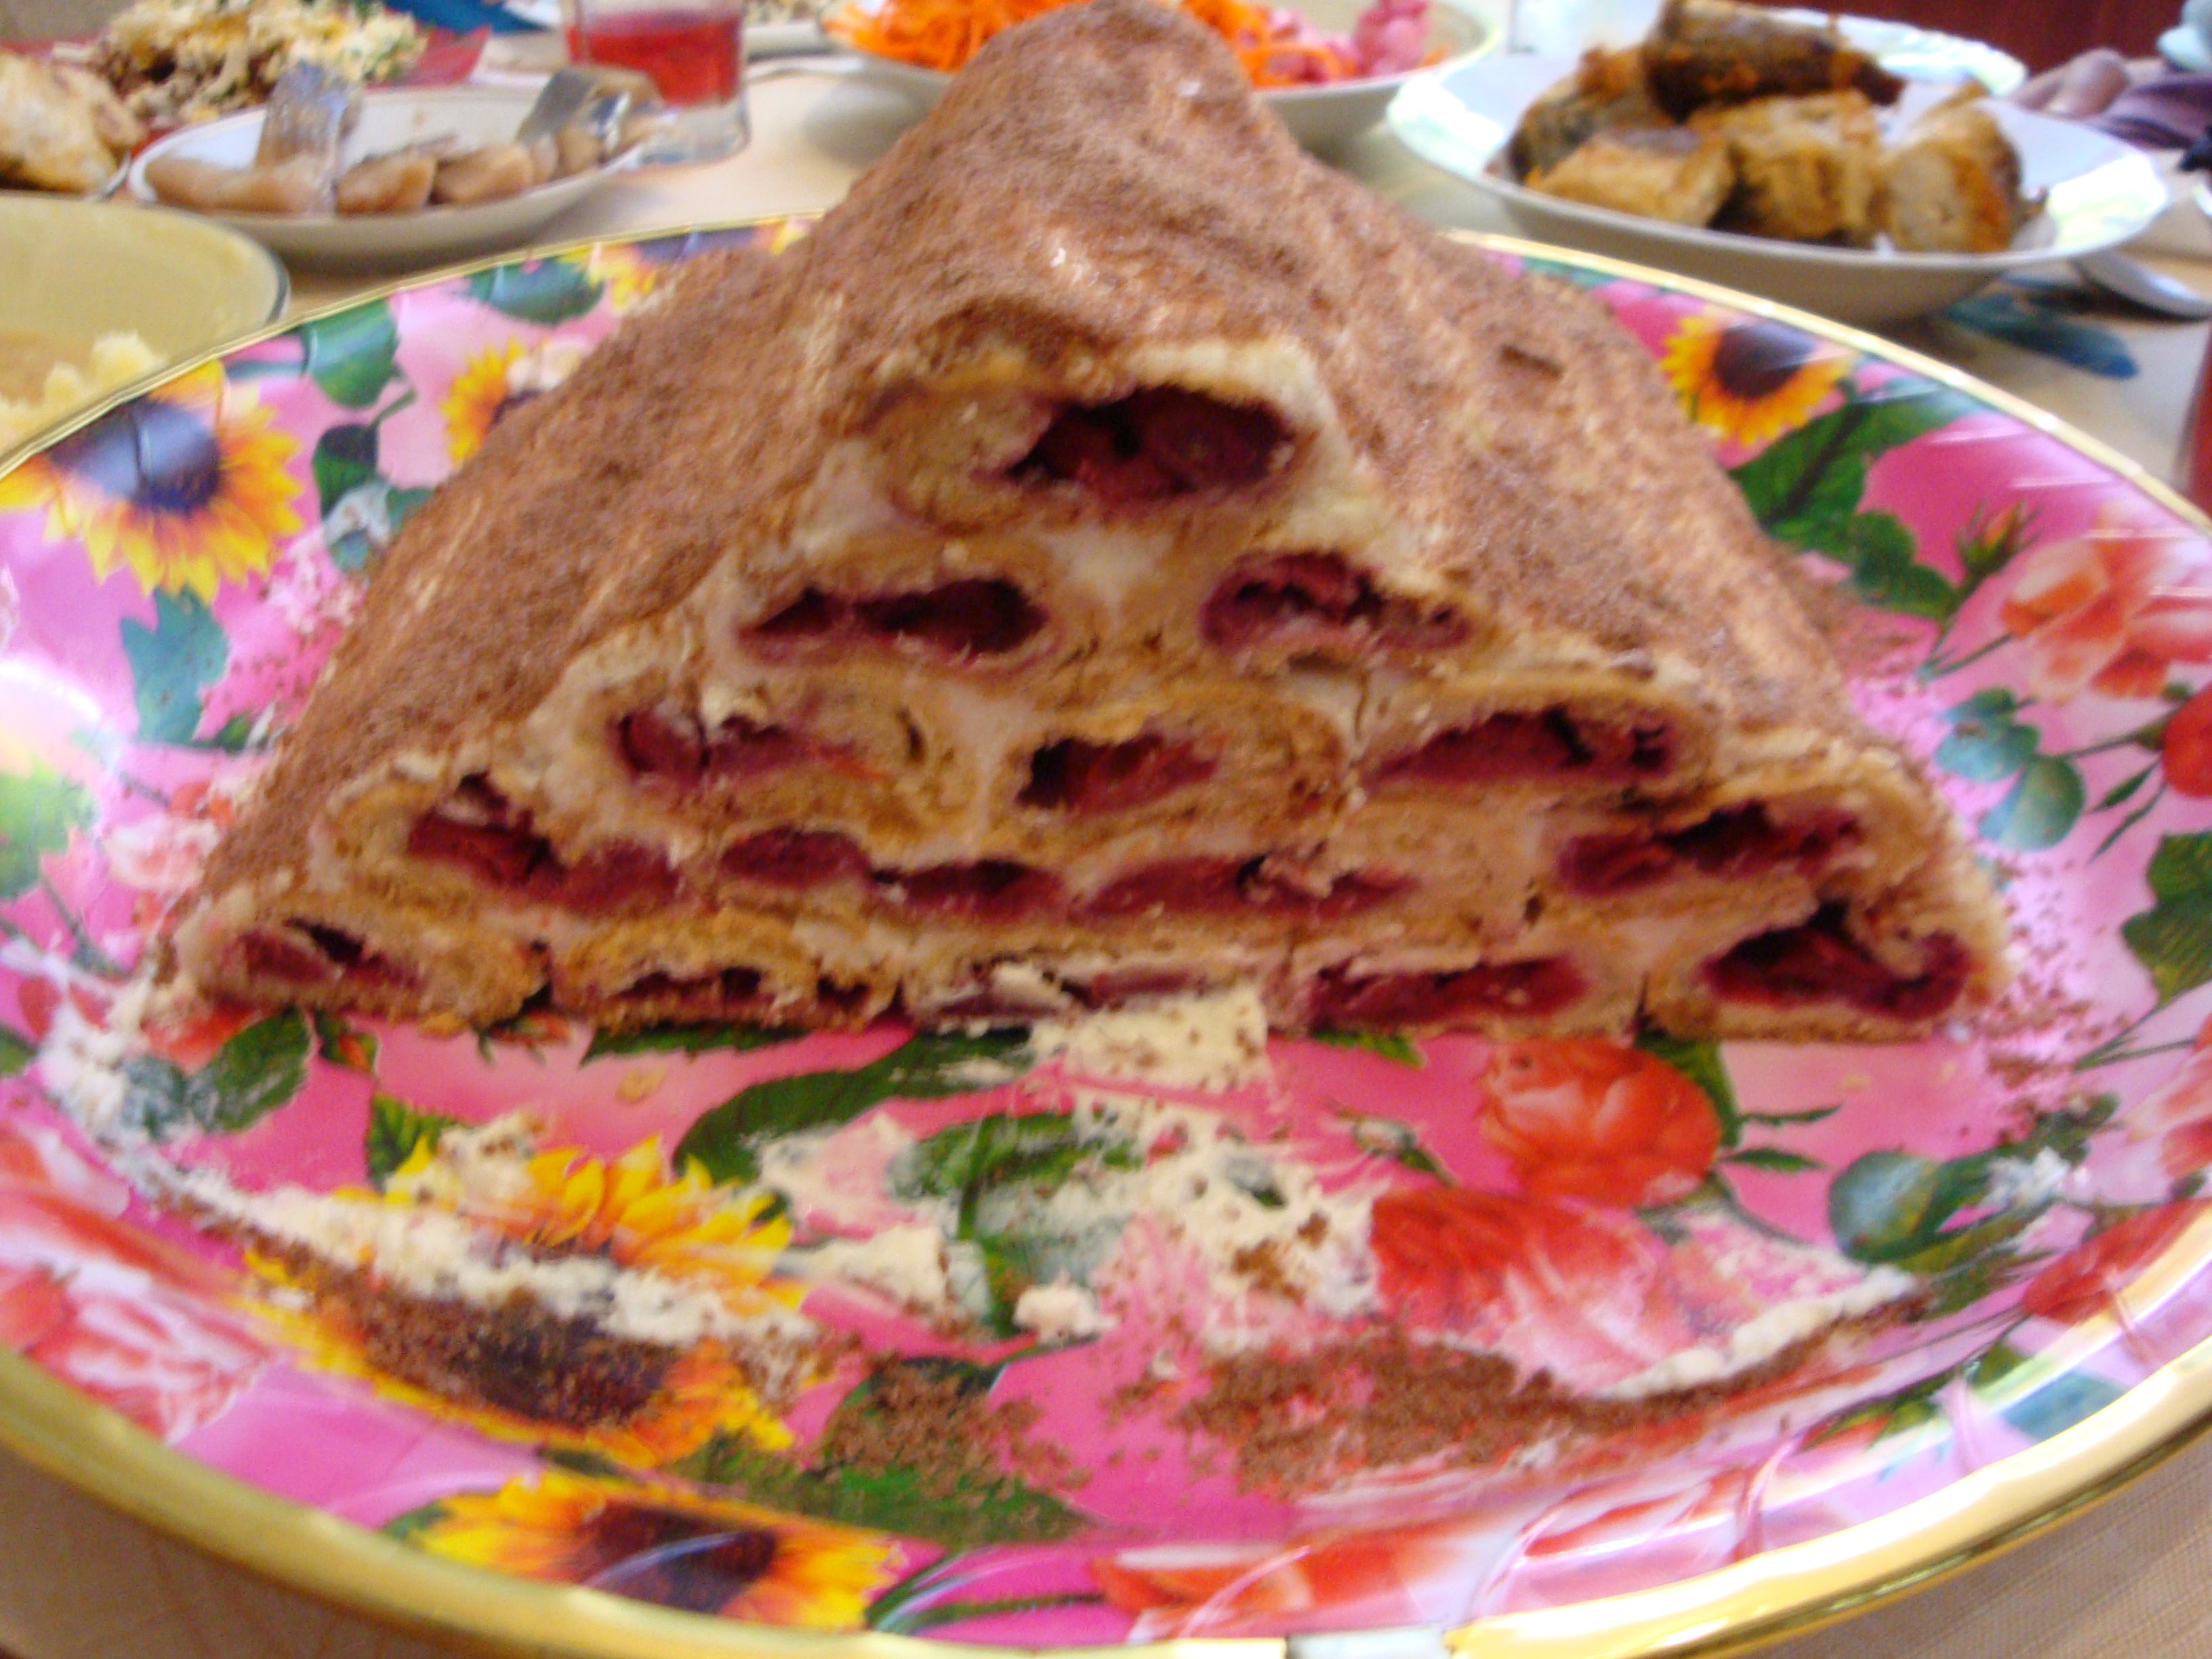 Monastyrskaya hut cake